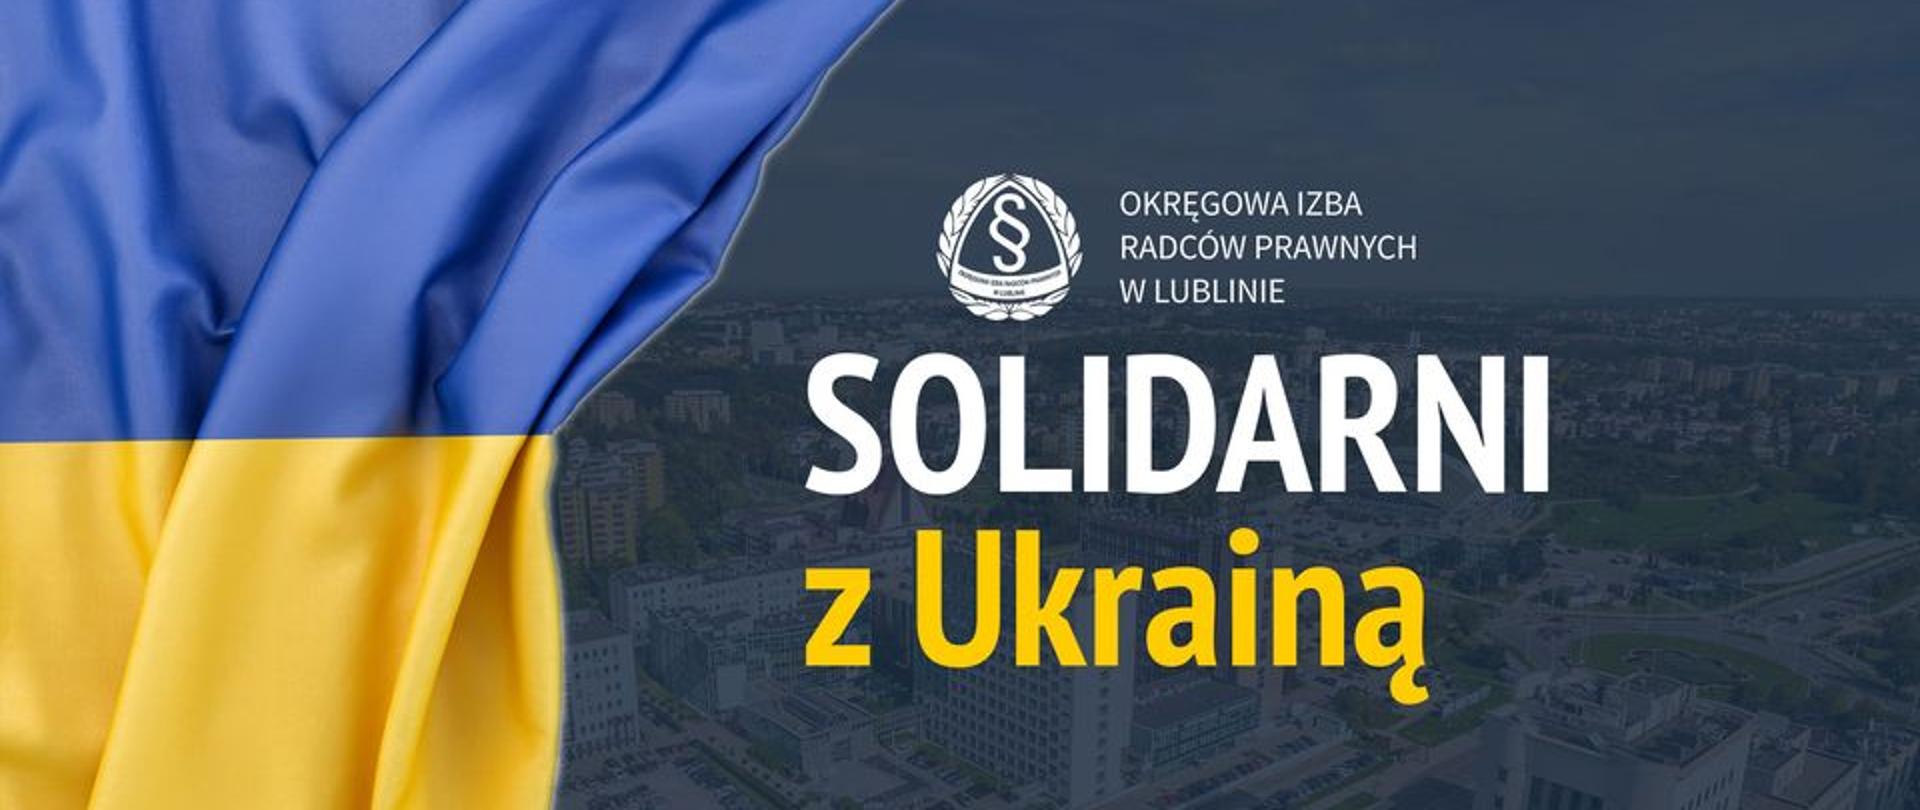 Panorama miasta, flaga ukrainy, logotyp Okręgowej Izby Radców Prawnych w Lublinie, napis Solidarni z Ukrainą